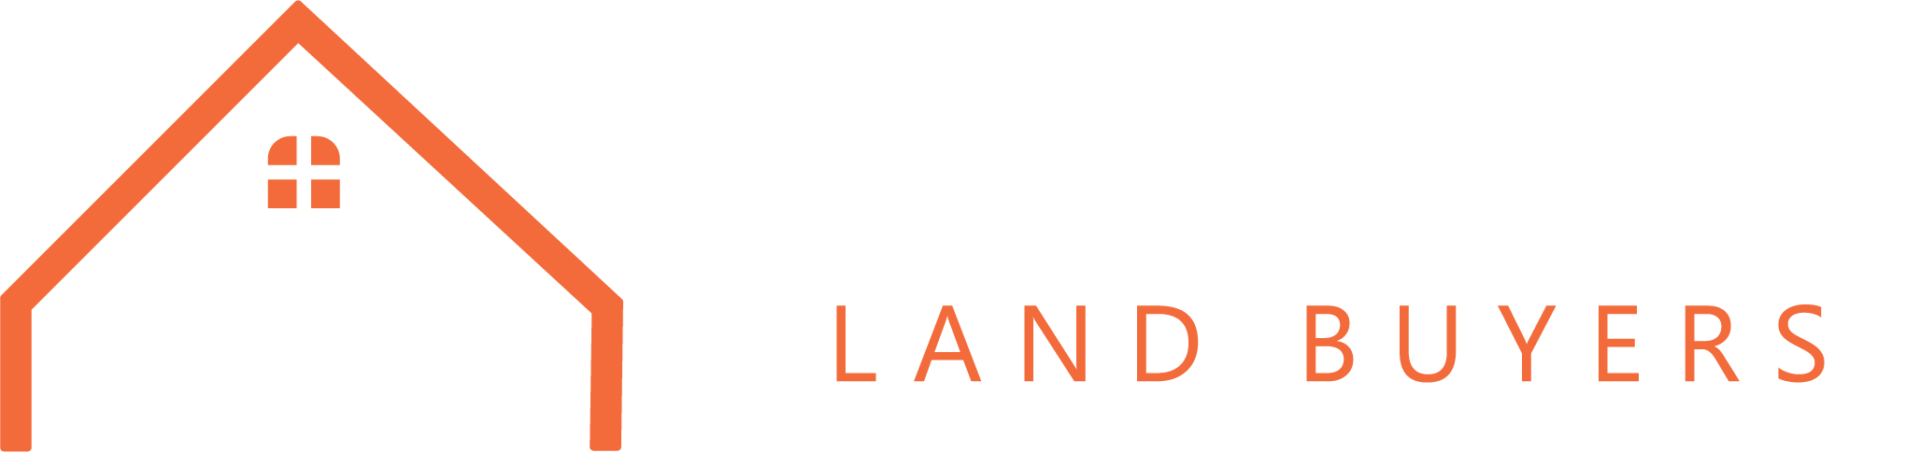 SM Land Buyers logo